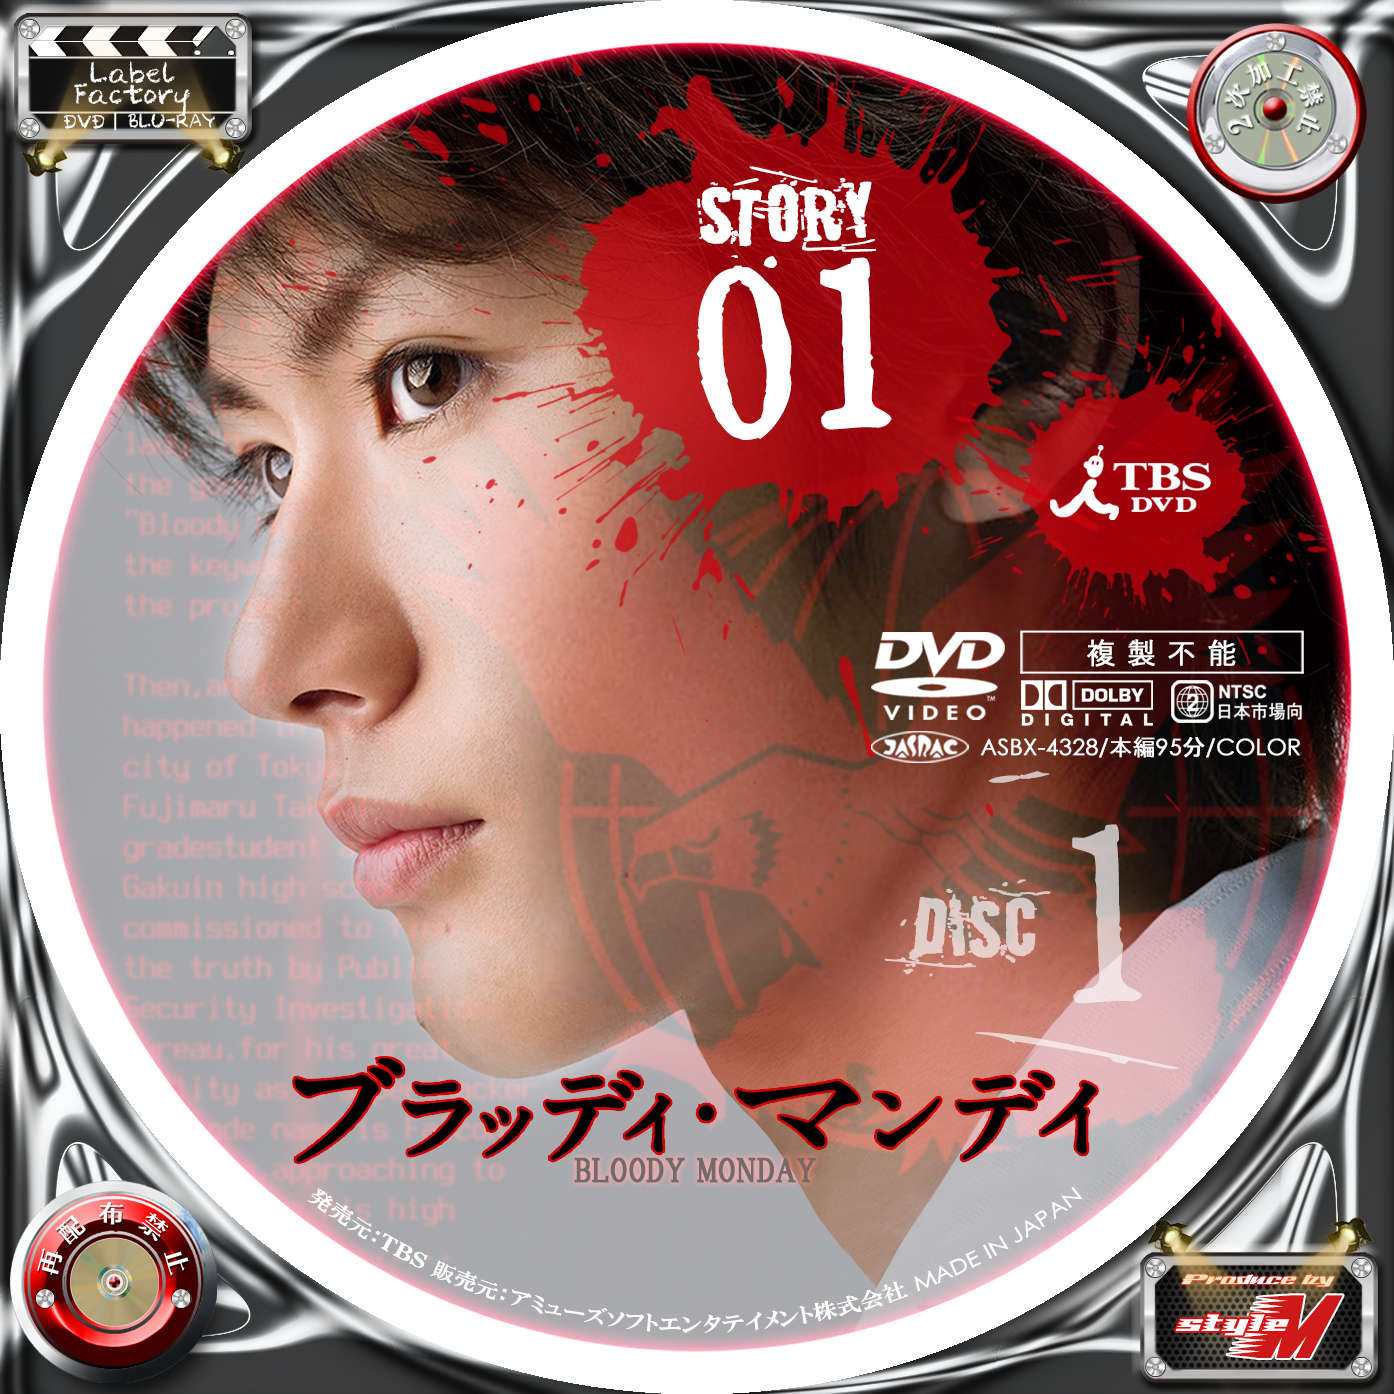 Label Factory M Style 自作dvd レーベル ラベル ブラッディ マンデイ Disc 1